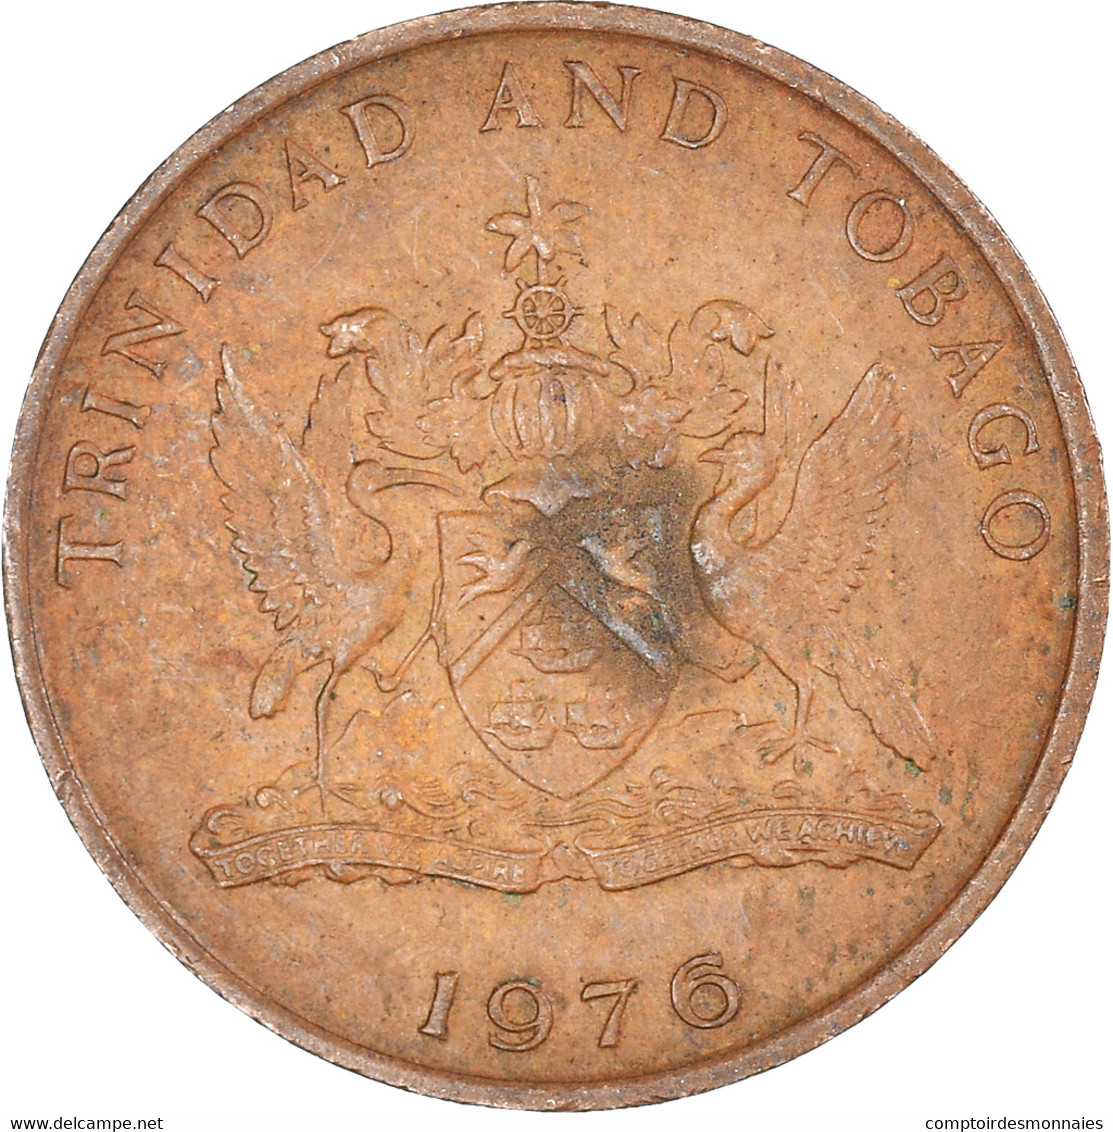 Monnaie, Trinité-et-Tobago, 5 Cents, 1976 - Trinidad Y Tobago